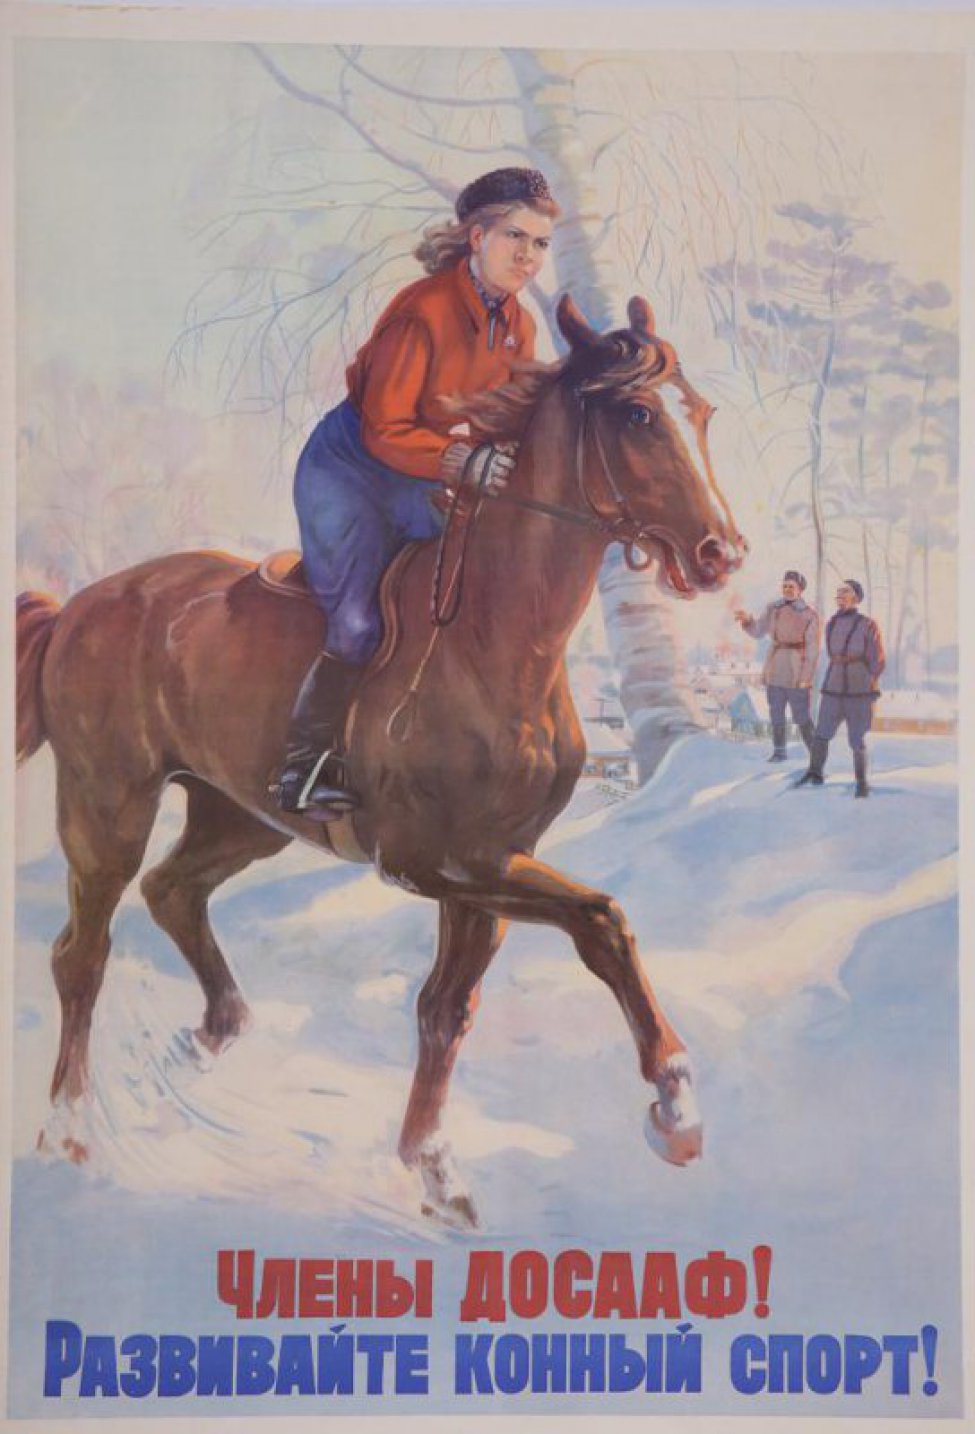 Изображена молодая девушка верхом на коне. Она в красной кофте  и синих брюках. Вдали деревья, постройки. Слева от нее на снегу стоят два мужчины. Внизу по снегу текст: "Члены ДОСААФ! Развивайте конный спорт!".